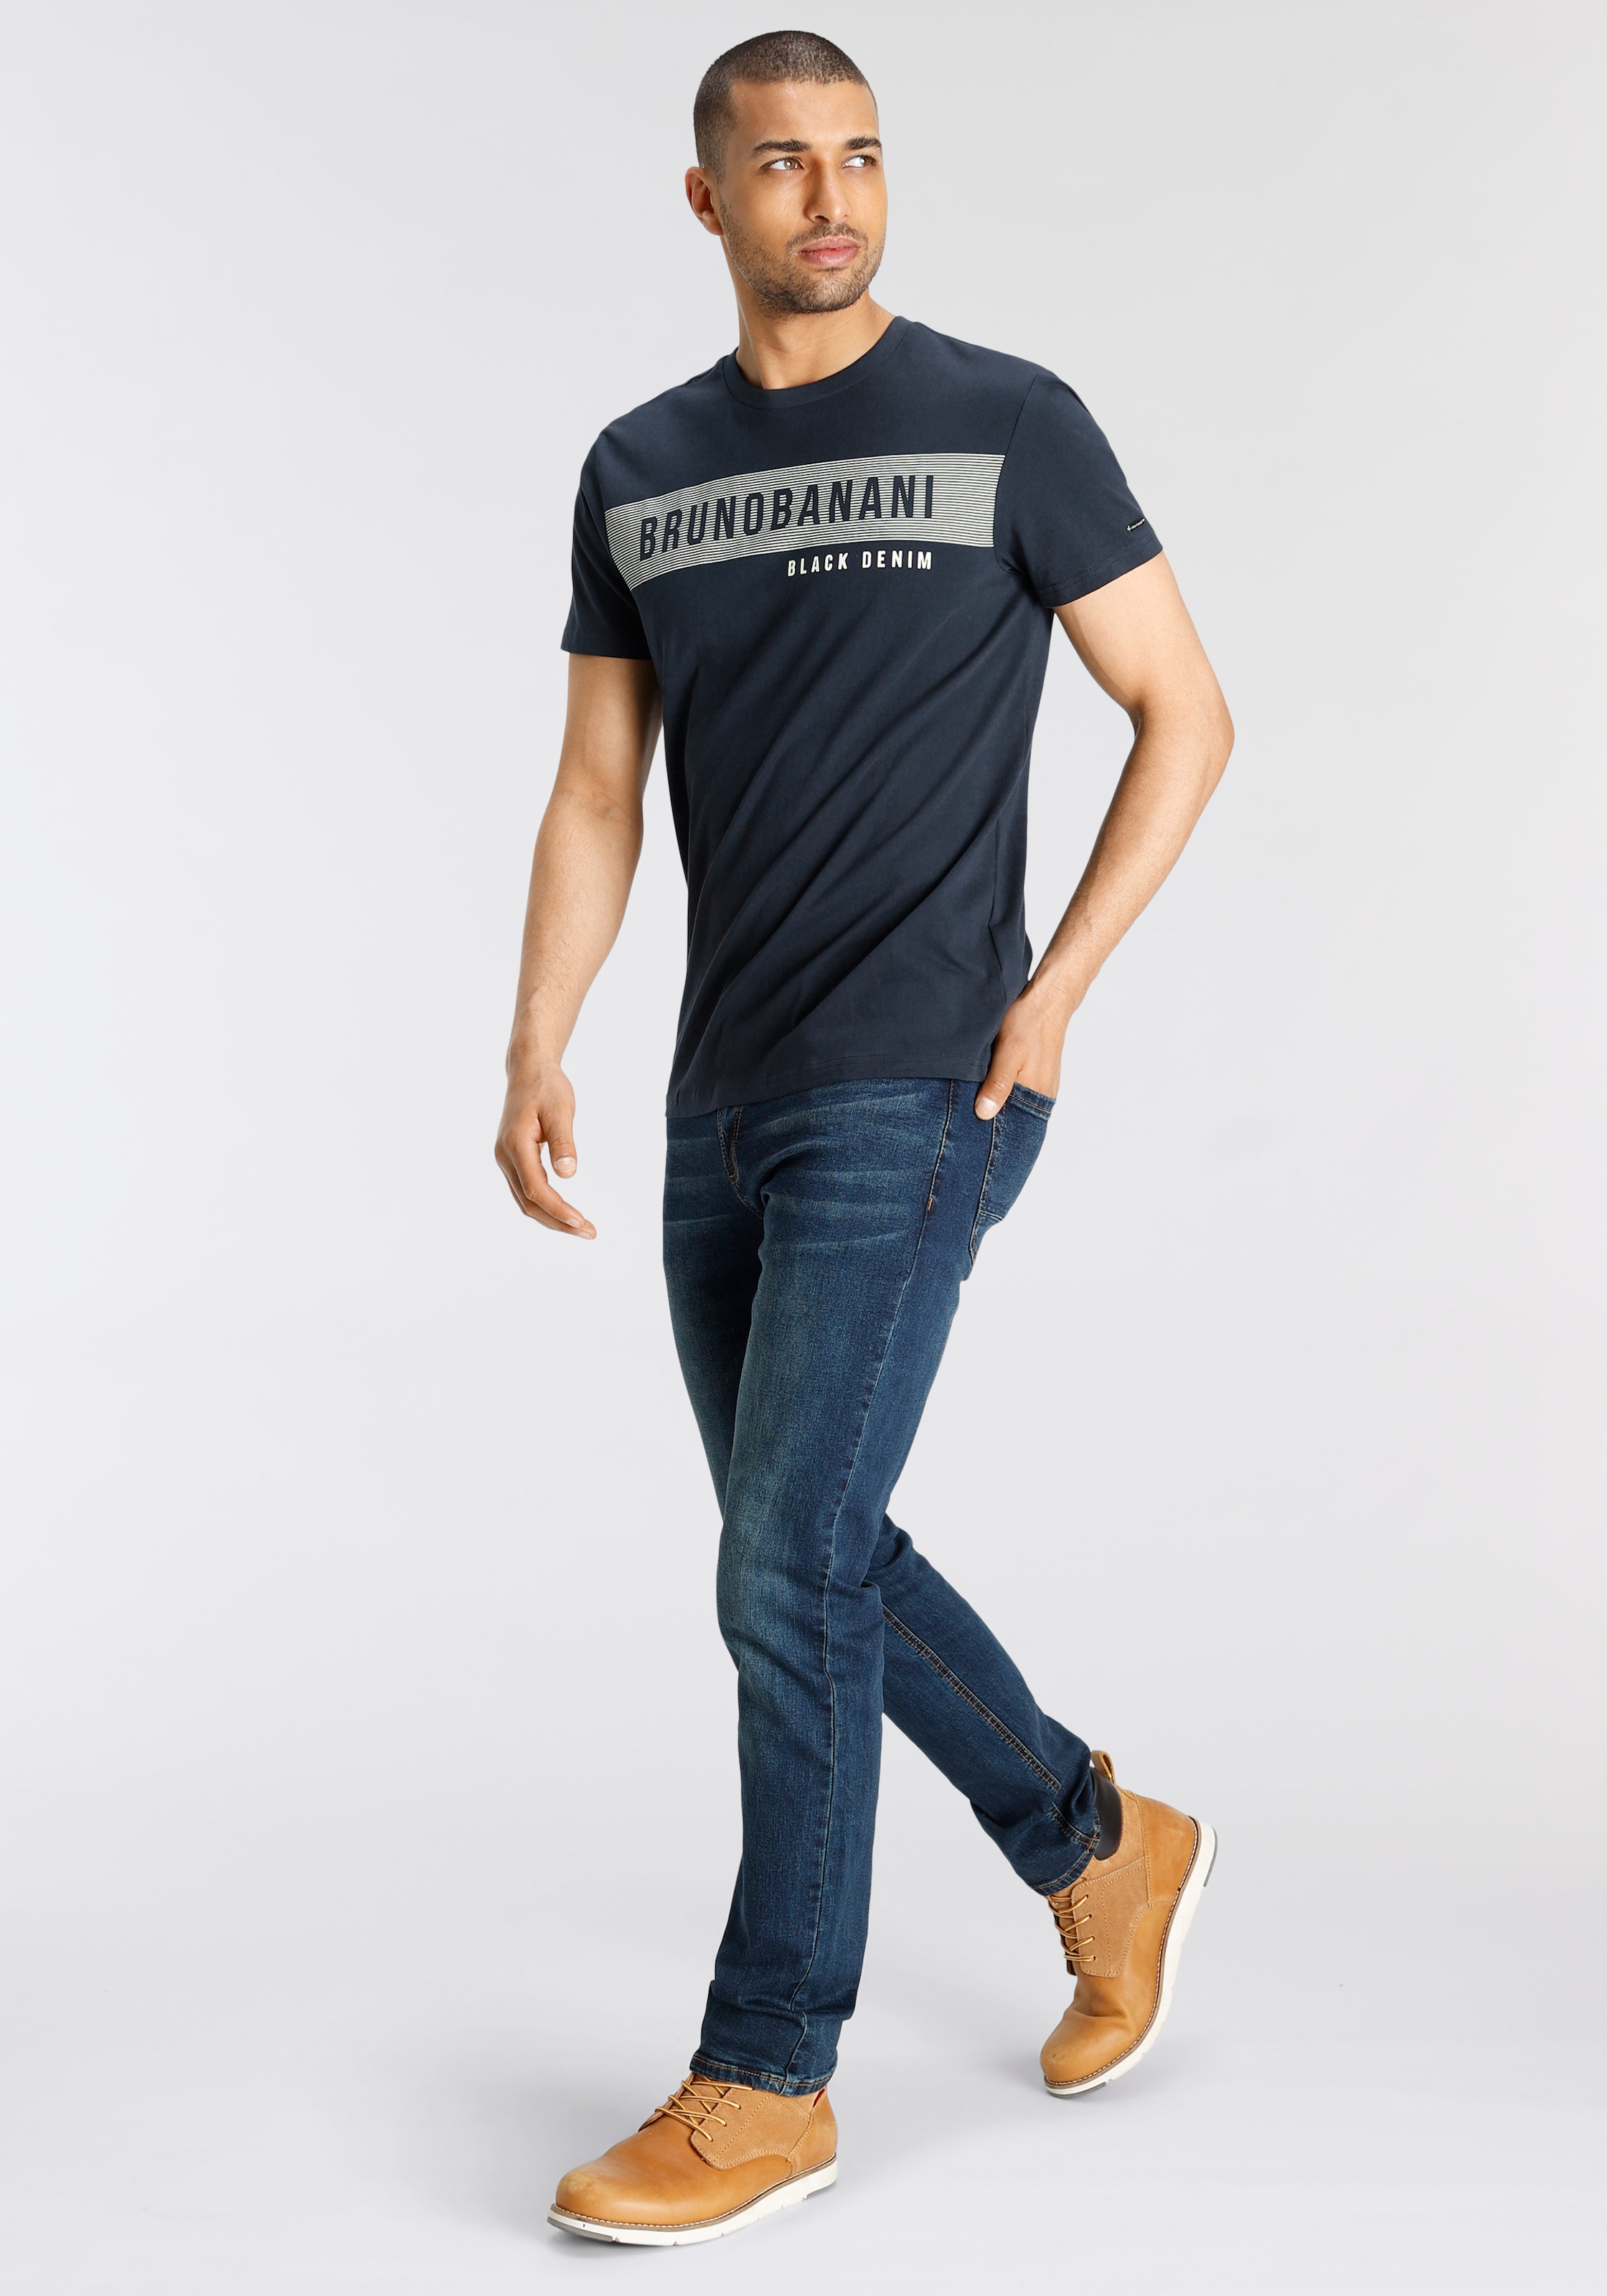 Bruno Banani T-Shirt, mit Markenprint online shoppen bei OTTO